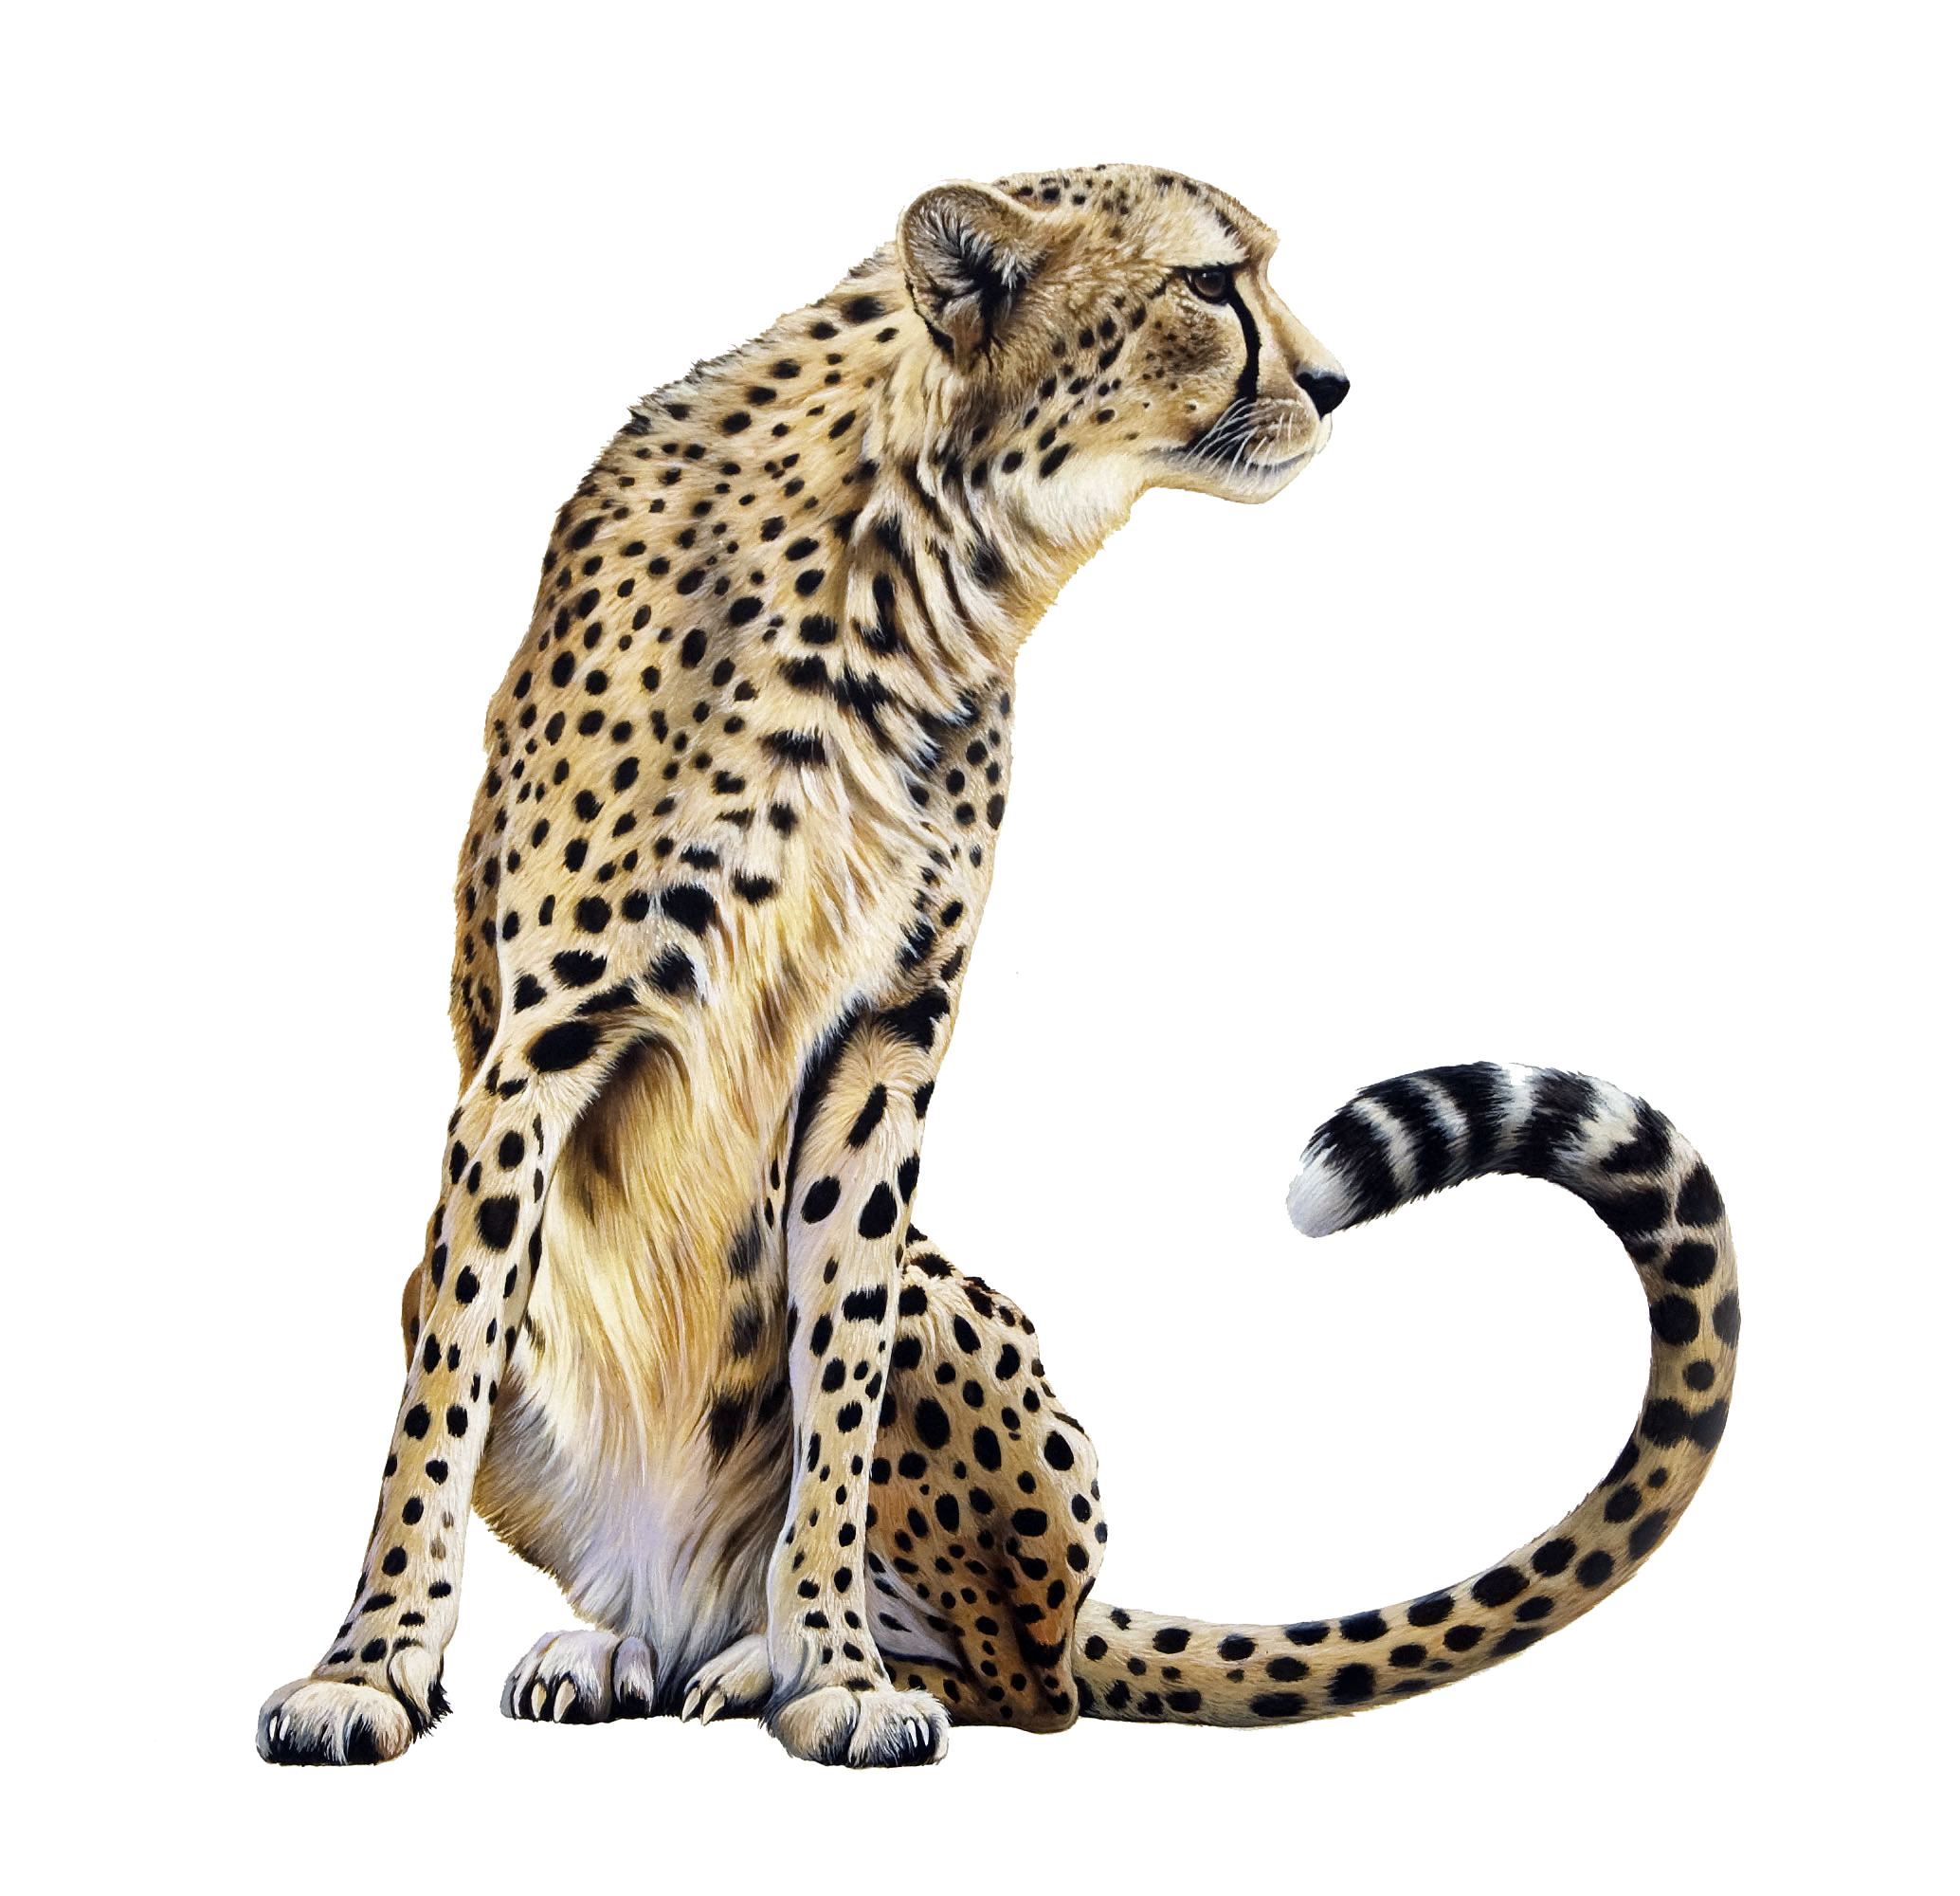 jaguar clipart clear